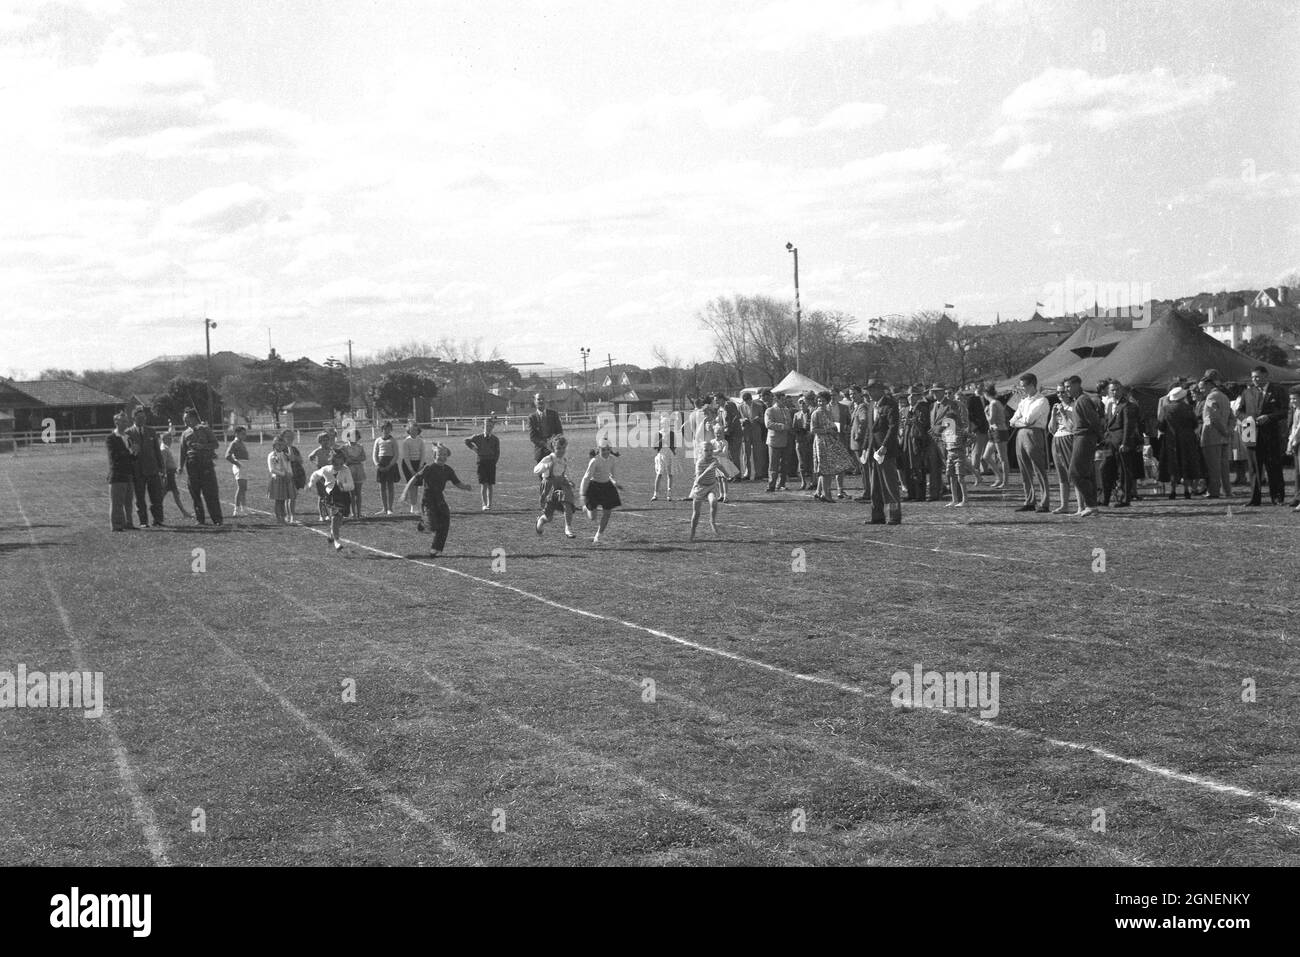 Historische 1950er Jahre, Eltern und Lehrer beobachten, wie kleine Kinder an einem Laufrennen teilnehmen, dem 100-Meter-Rennen, draußen auf einem Grasfeld an einem Grundschule-Sporttag, England, Großbritannien. Stockfoto